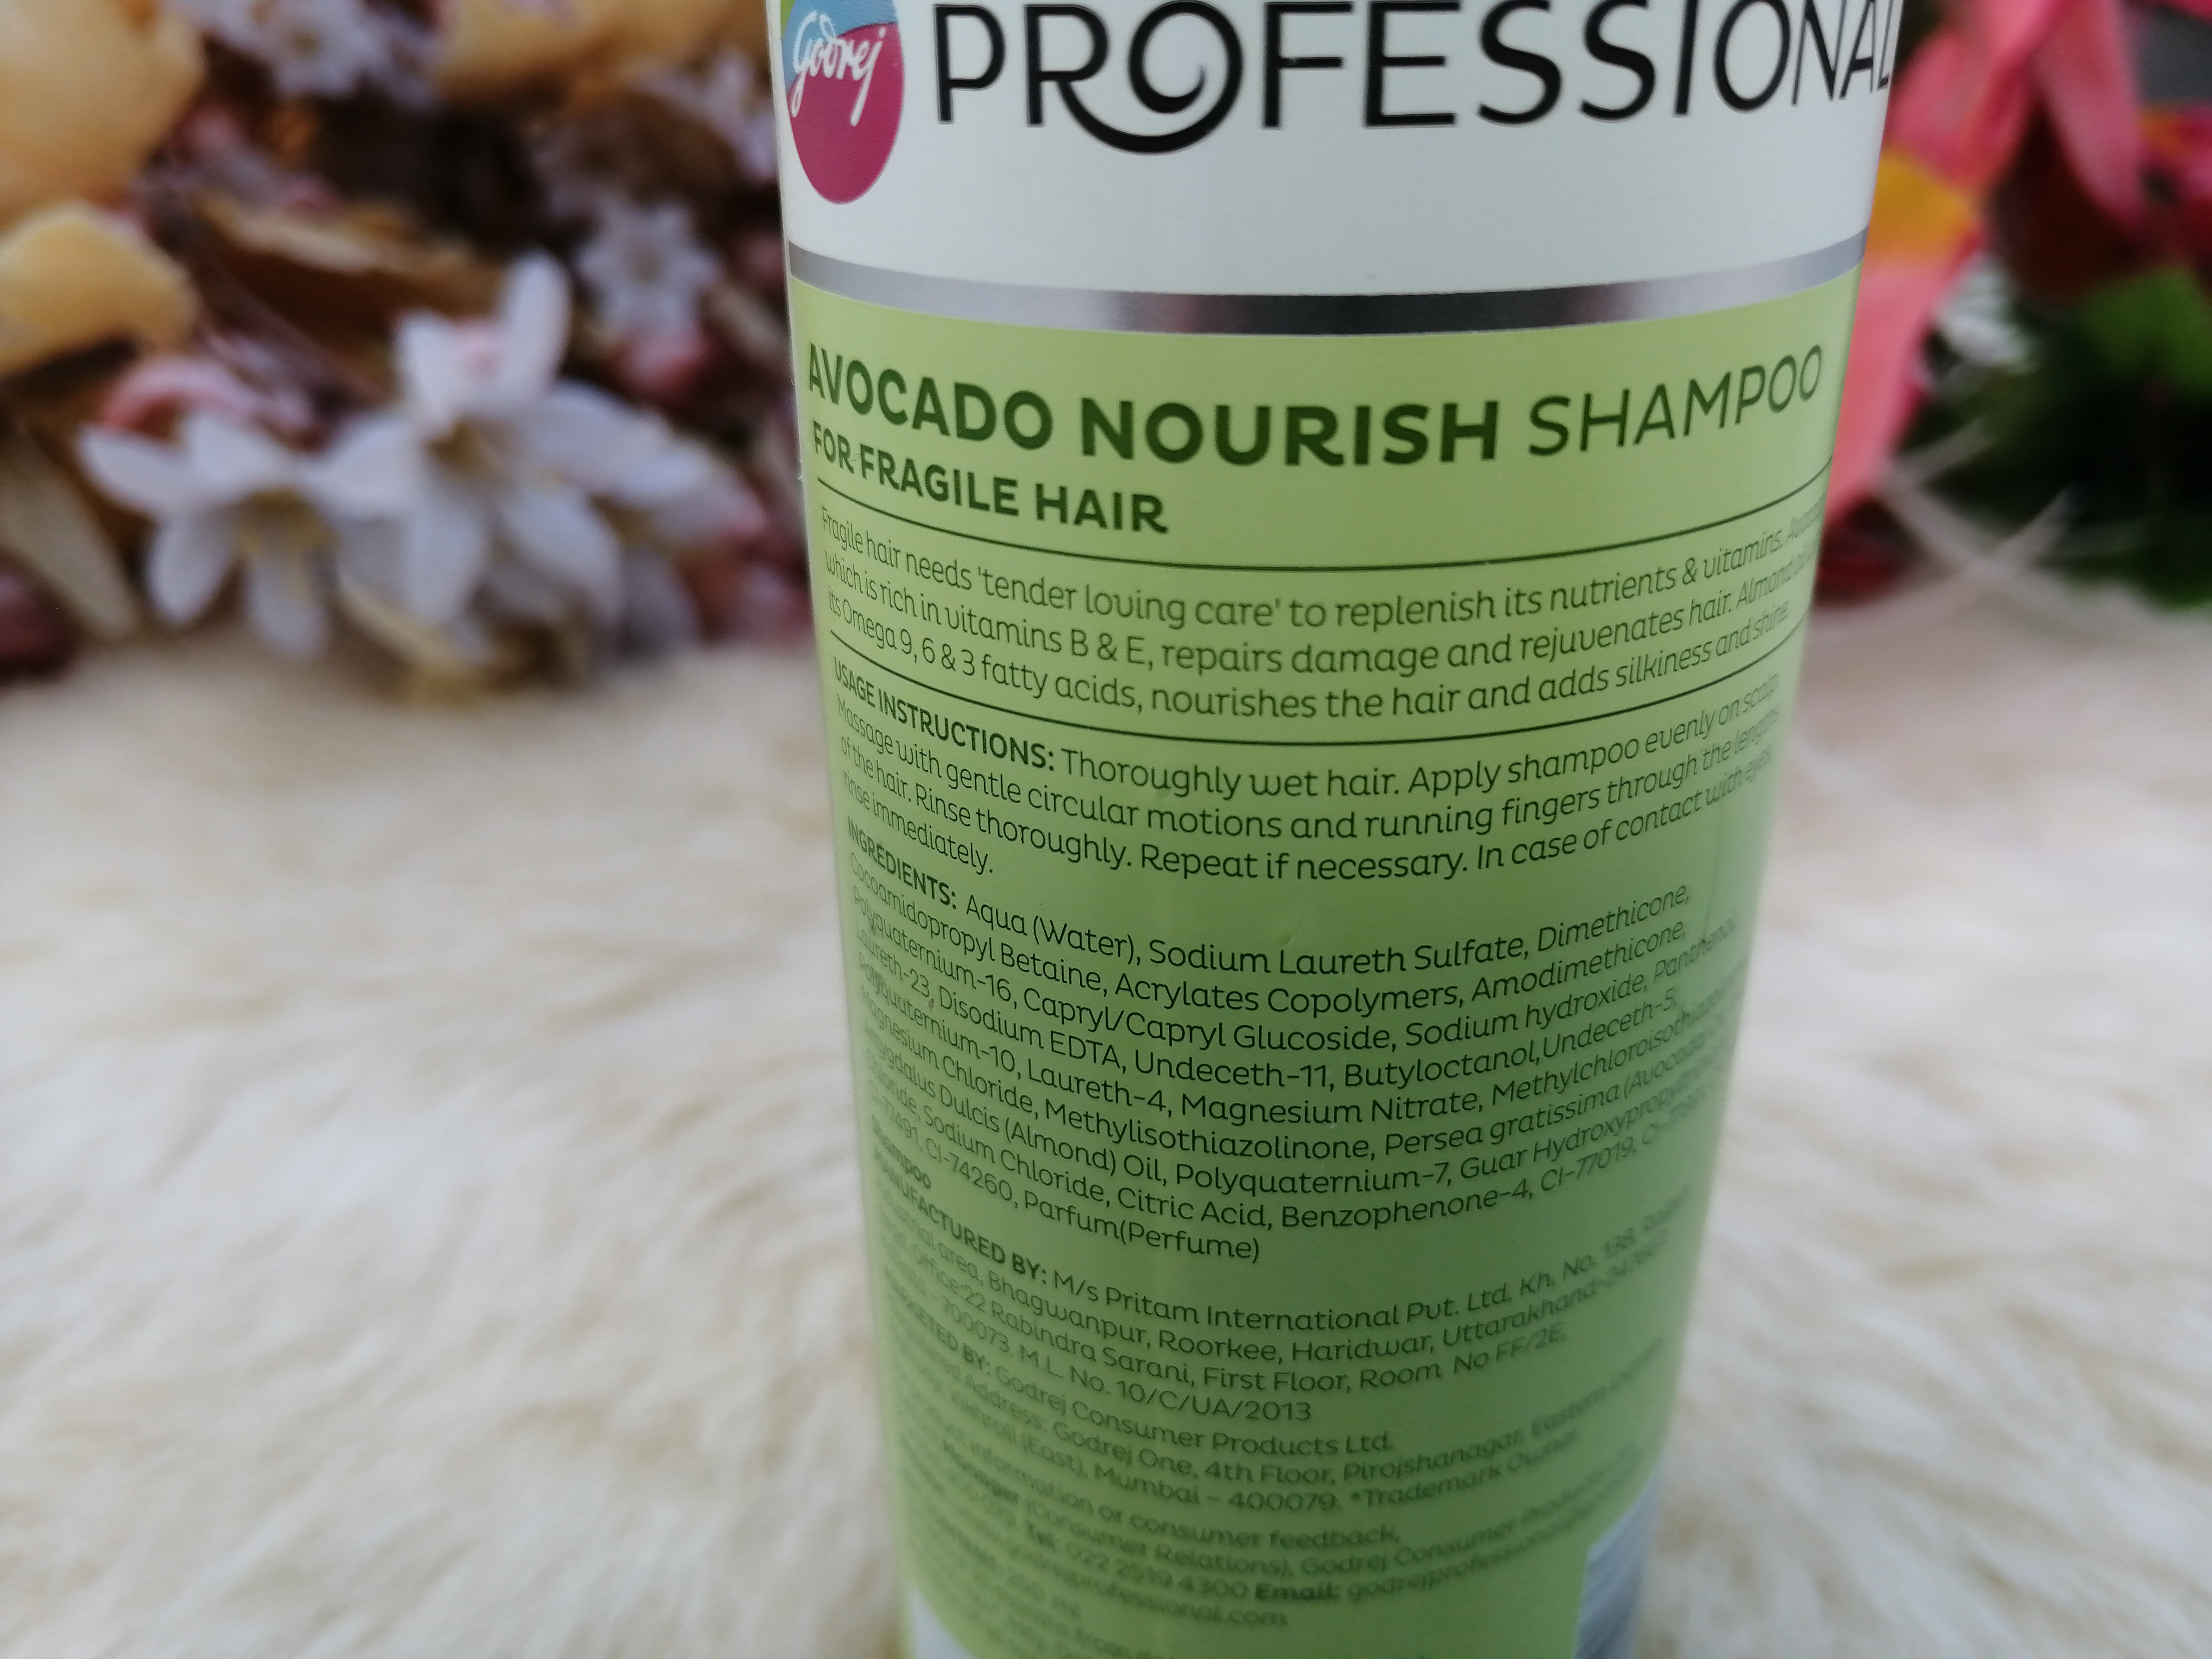 Godrej Professional Avocado Nourish Shampoo| Review